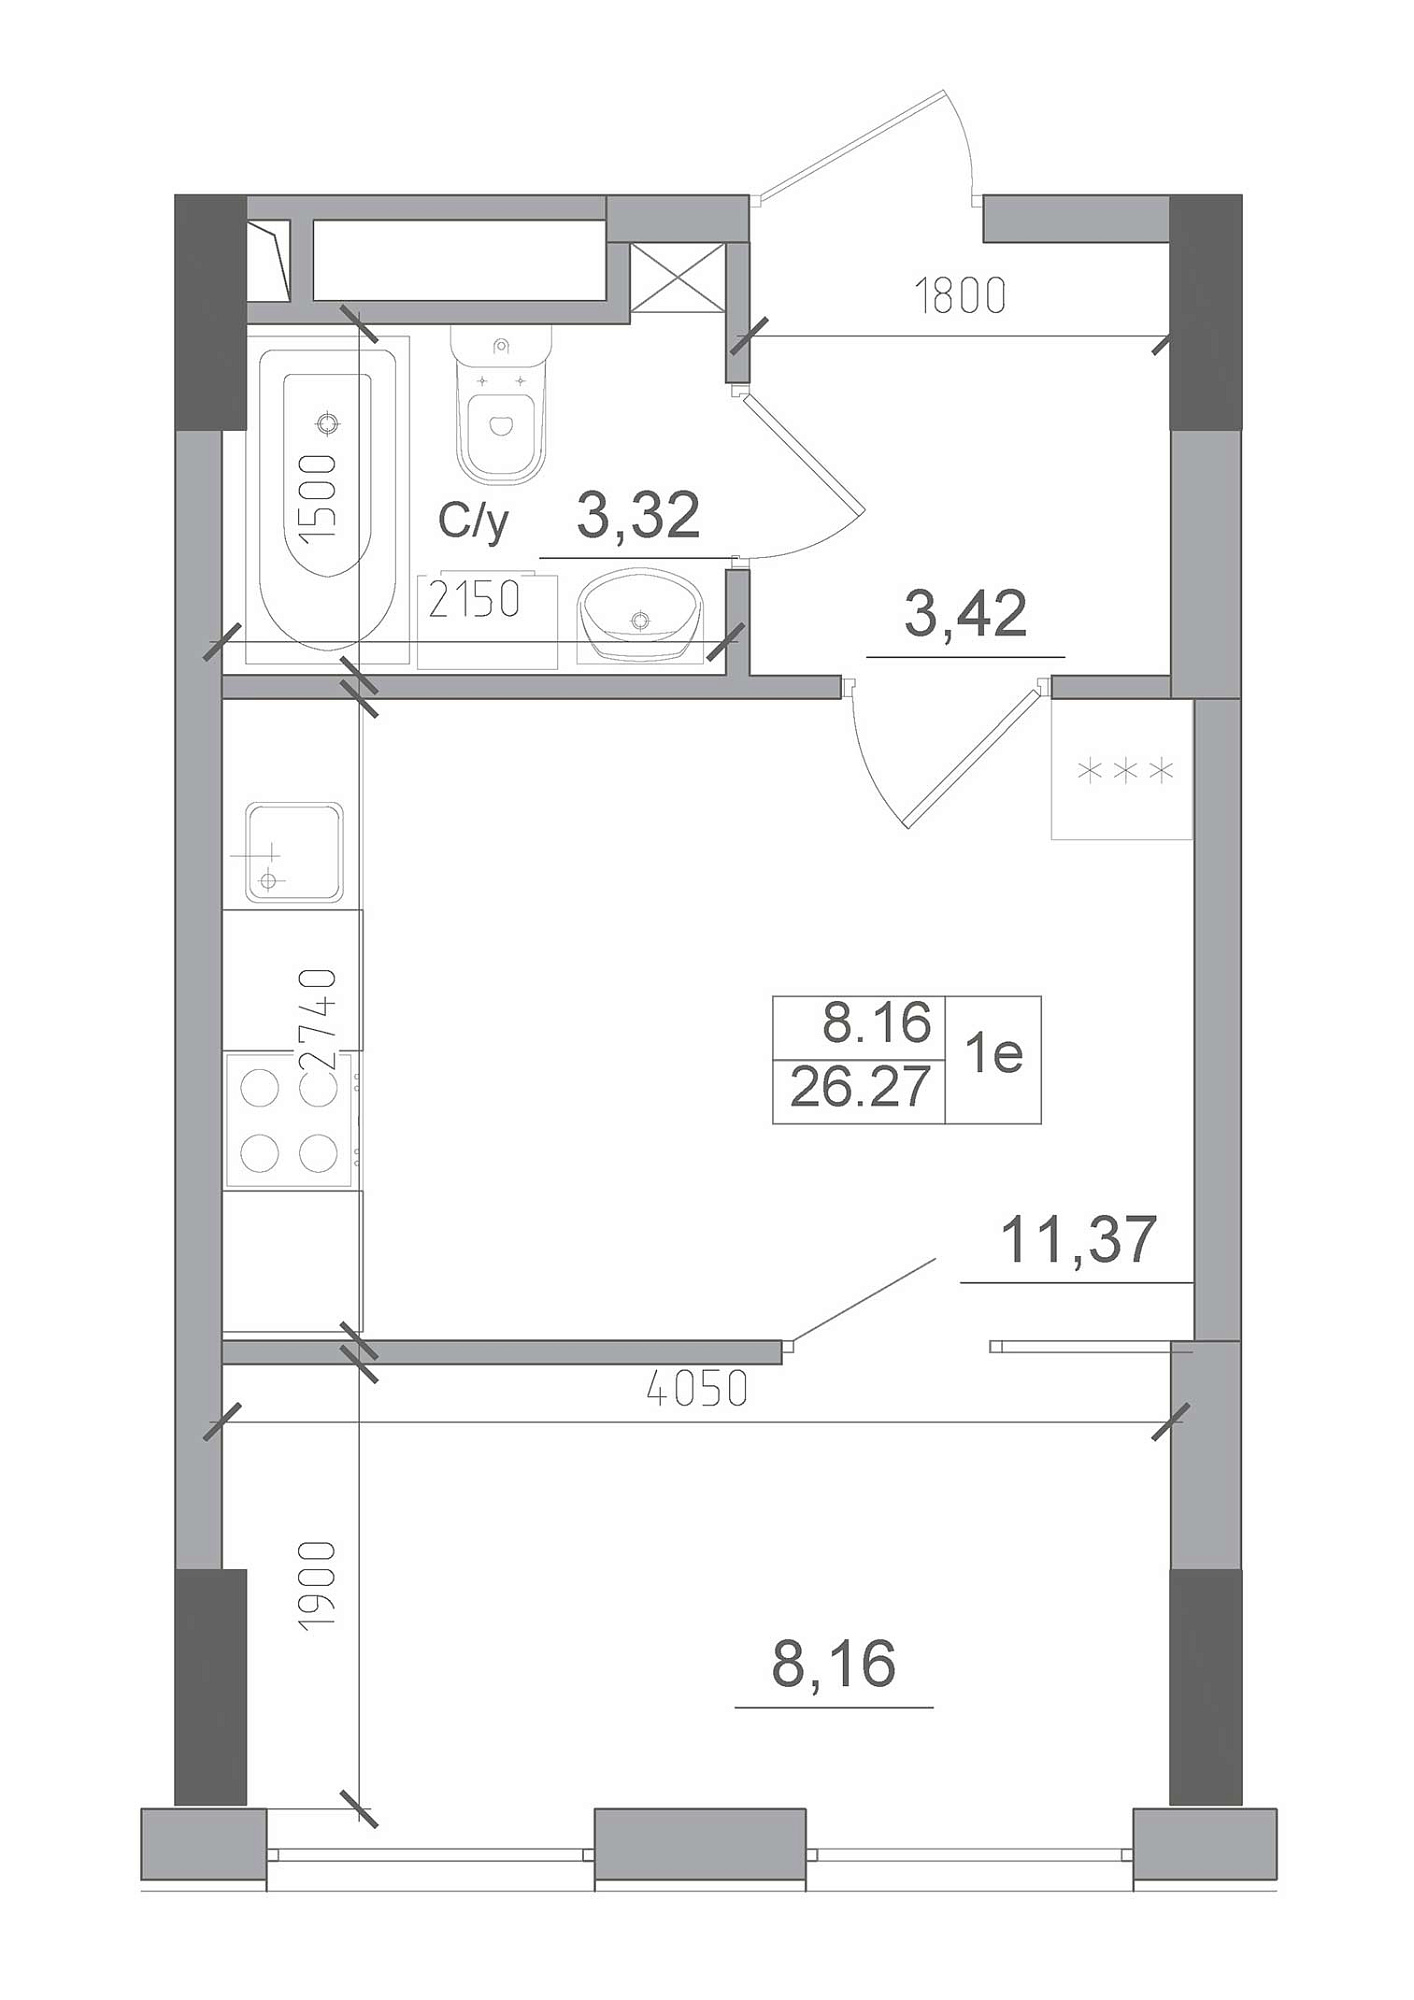 Планировка 1-к квартира площей 26.27м2, AB-22-01/00009.